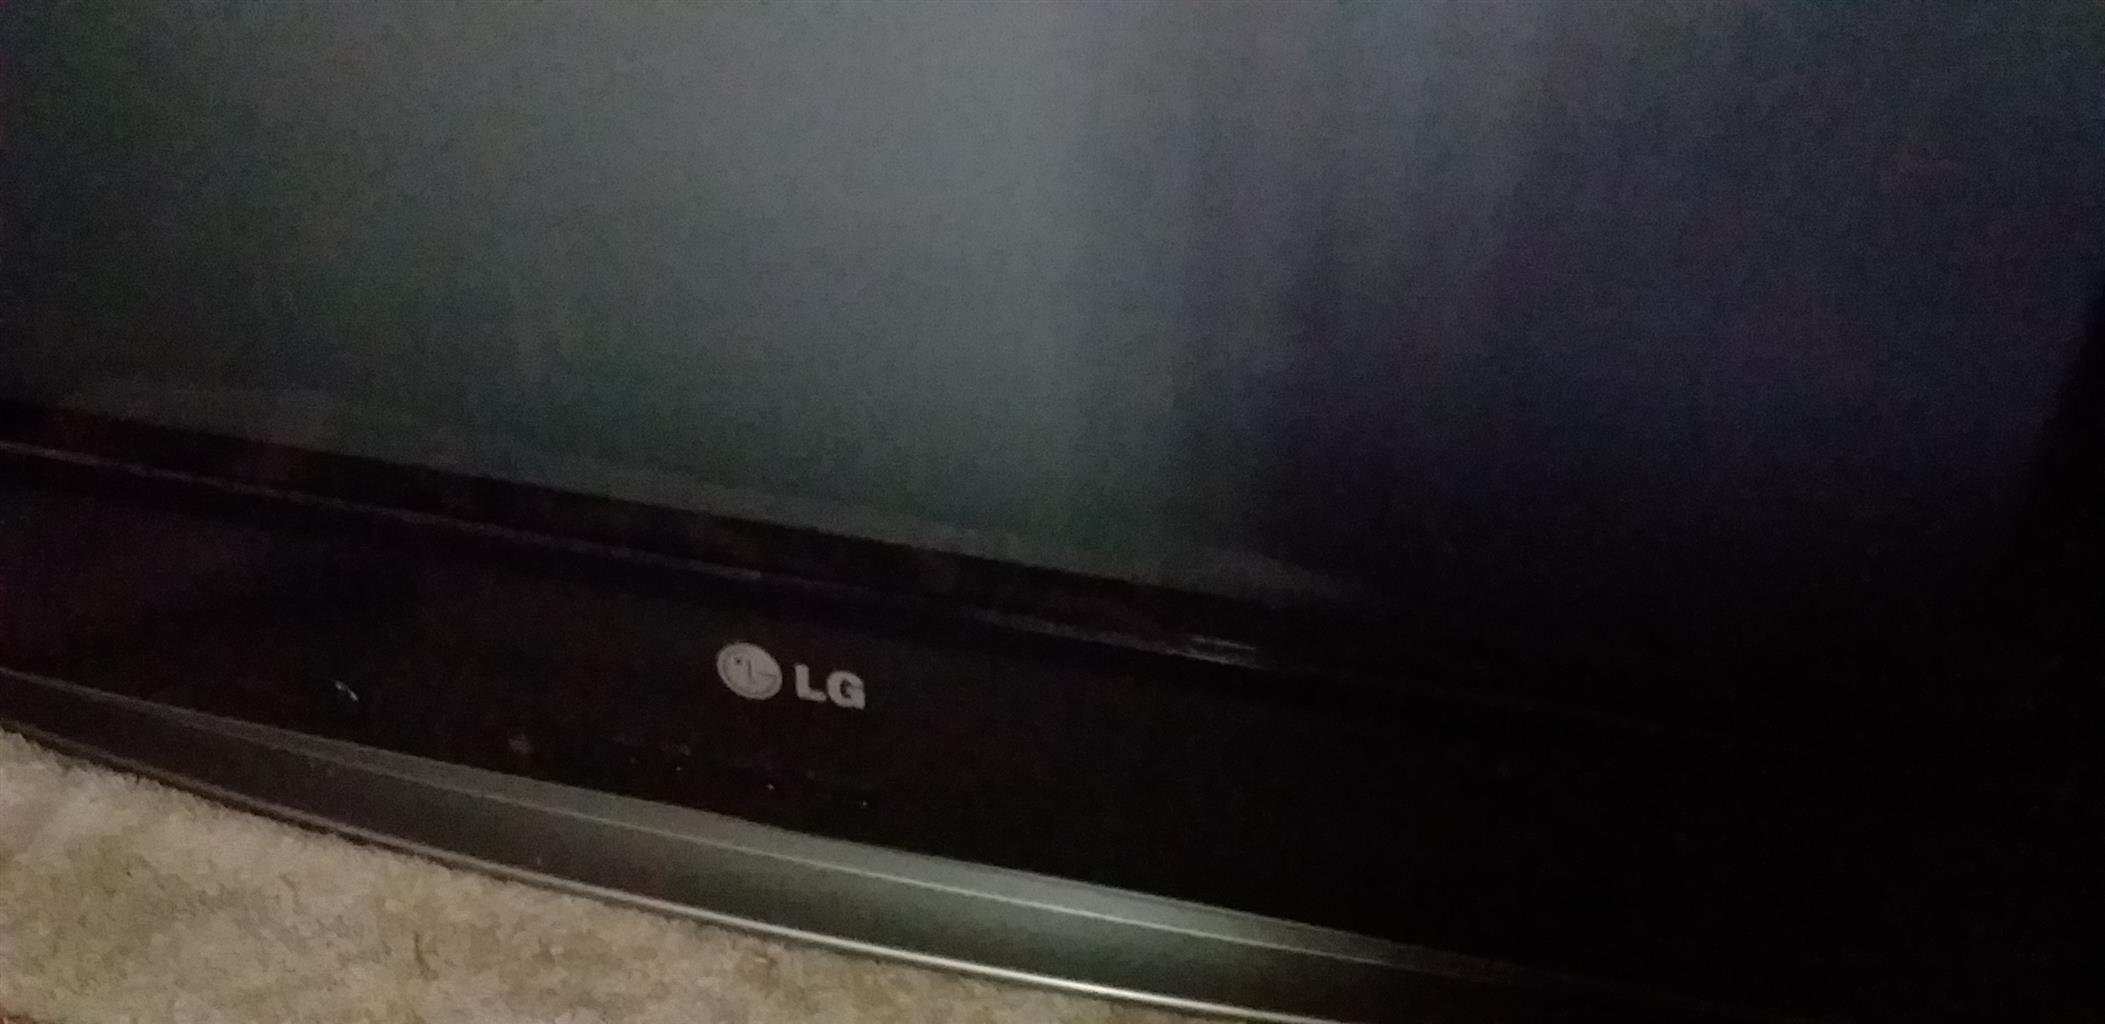 LG 74cm box tv